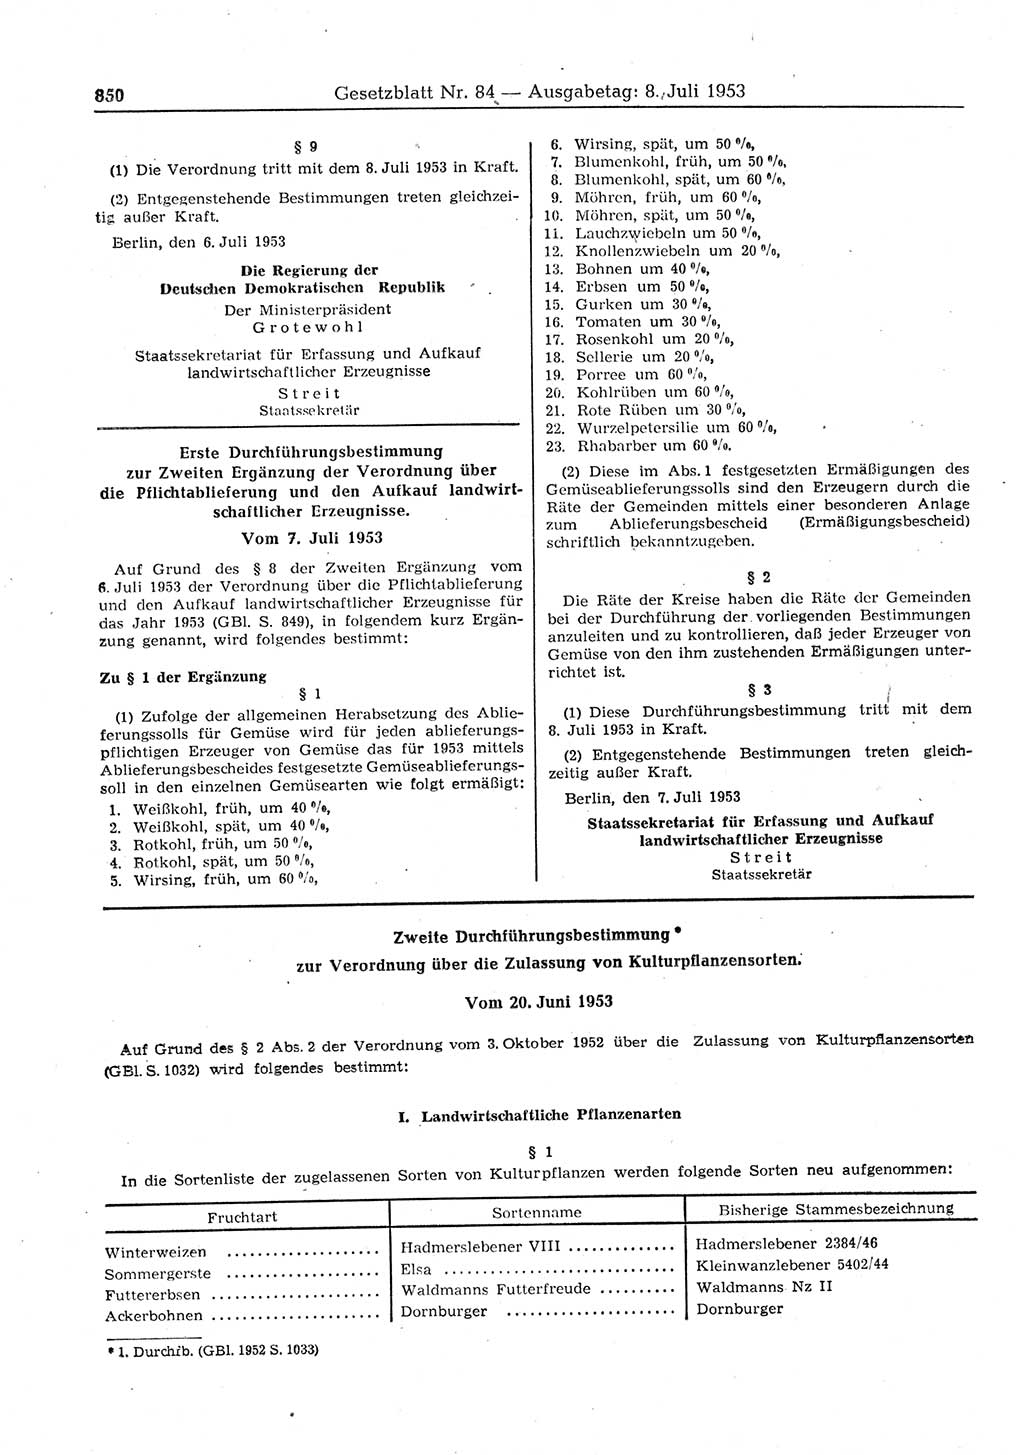 Gesetzblatt (GBl.) der Deutschen Demokratischen Republik (DDR) 1953, Seite 850 (GBl. DDR 1953, S. 850)